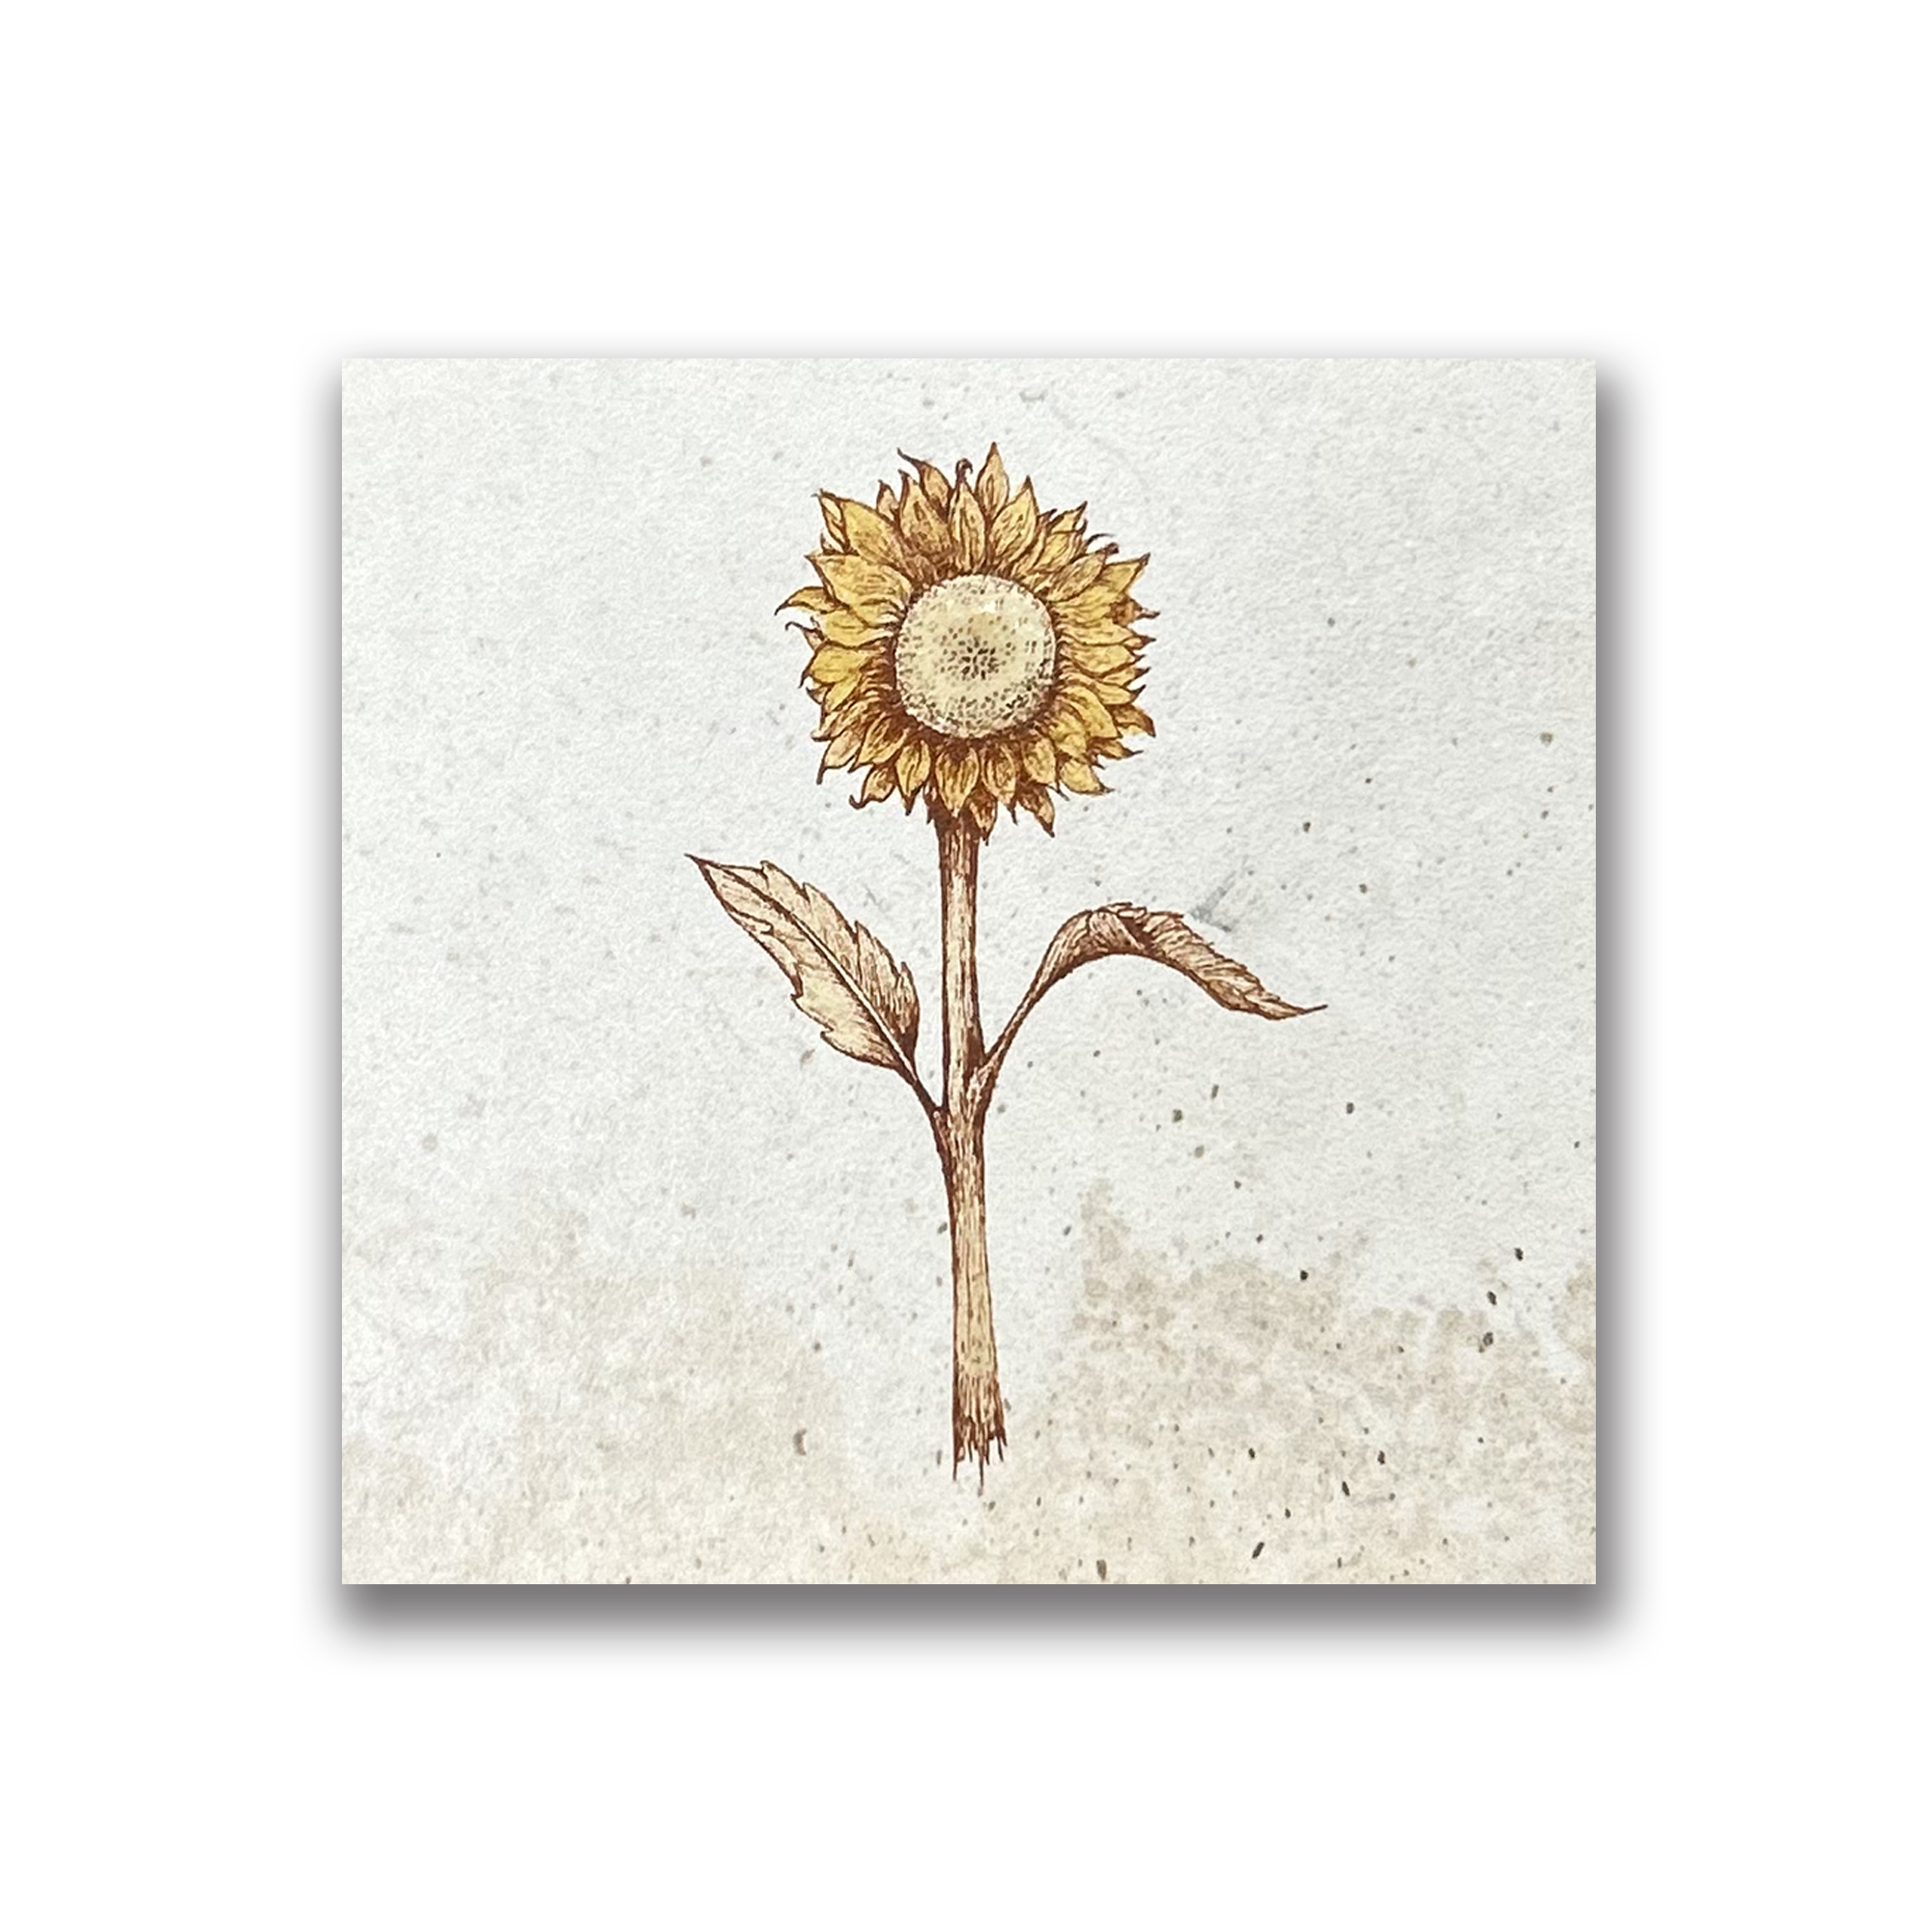 Sunflower Art Tile